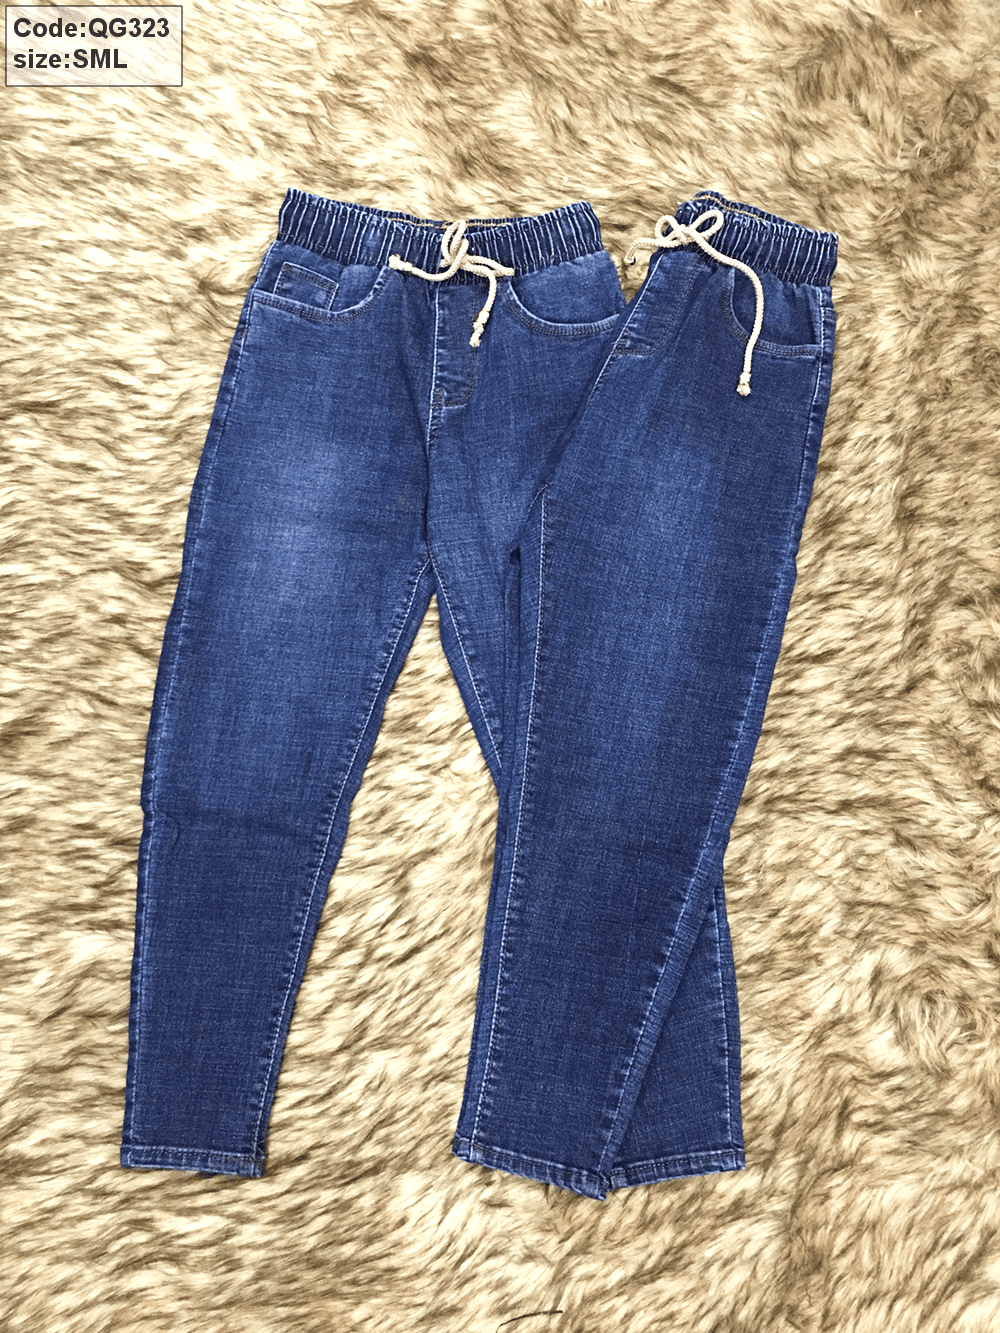 15 Thương Hiệu Quần Jeans Việt Nam Nổi Tiếng, Đẹp, Xịn￼ - ALONGWALKER